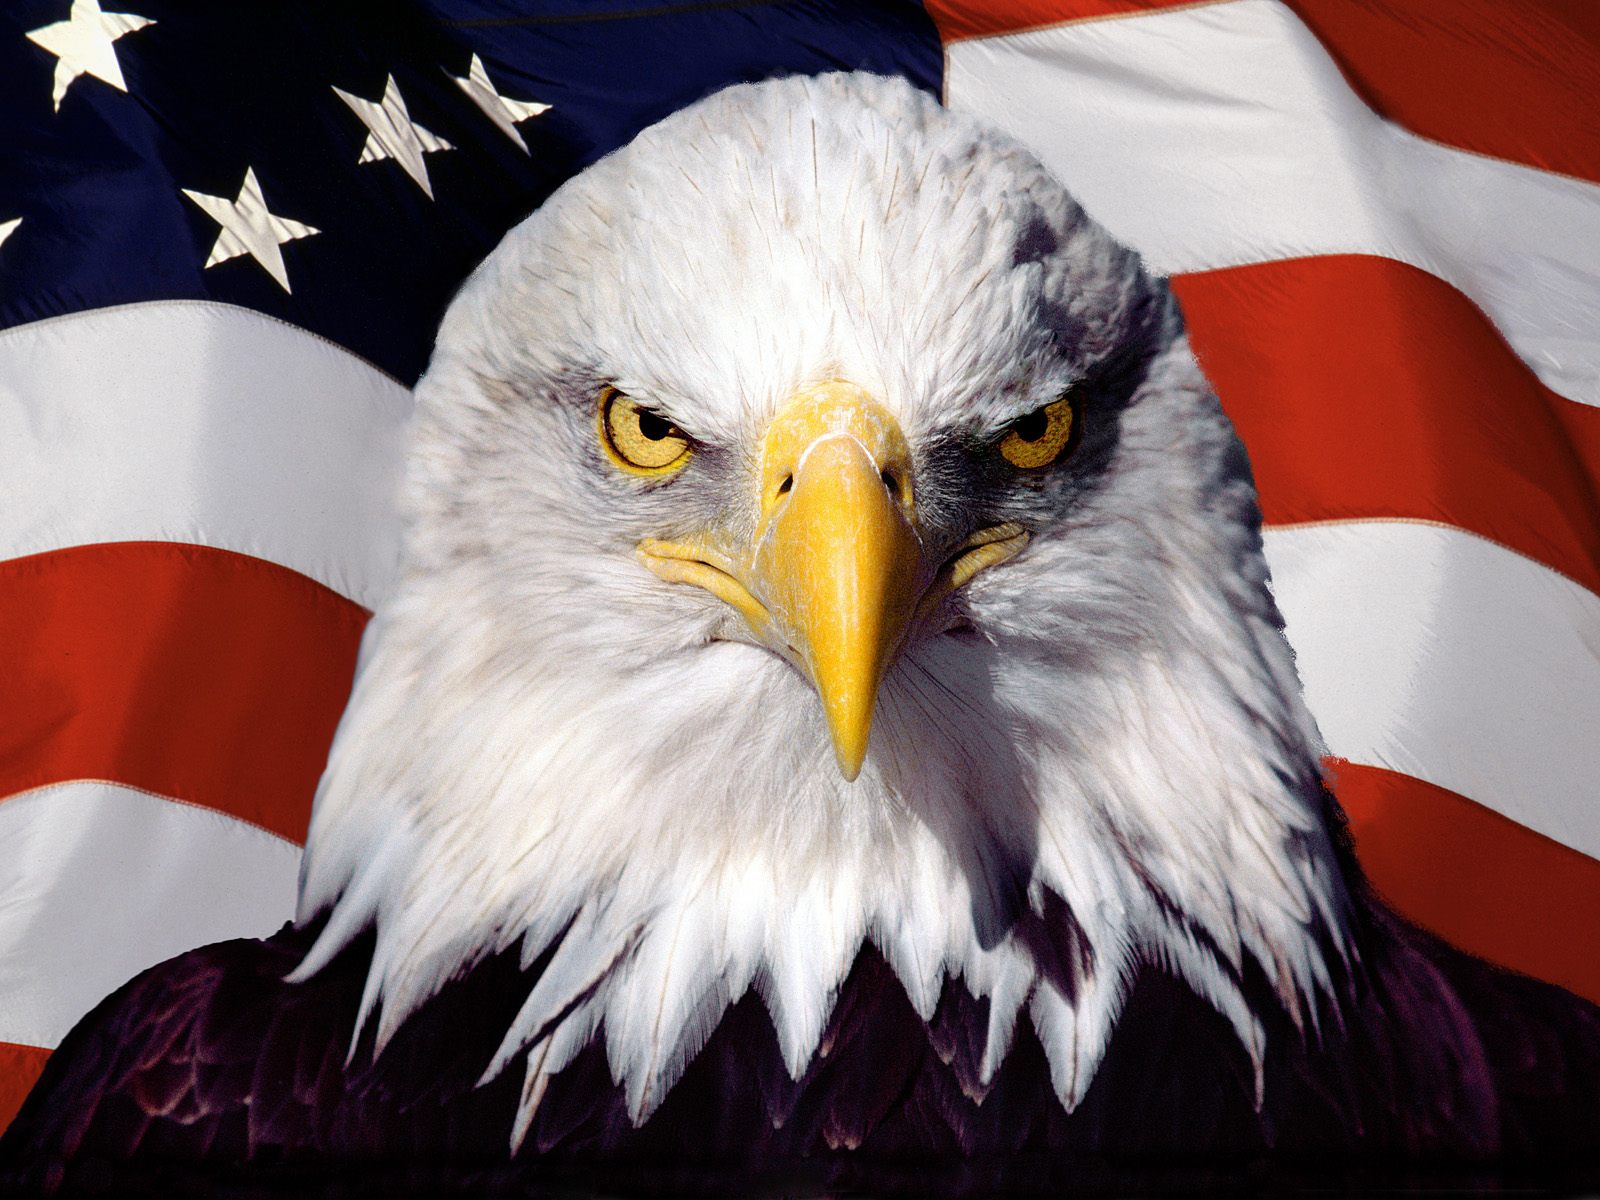 Lá cờ Mỹ đã trở thành biểu tượng của nền văn hóa và giá trị dân tộc Mỹ. Hình ảnh lá cờ vang rực rỡ, rực rỡ vẫn luôn đầy tự hào. Hãy khám phá những nét đẹp và ý nghĩa sâu xa của lá cờ Mỹ trong ảnh này. Nếu bạn yêu quý nước Mỹ, hãy truy cập ngay!